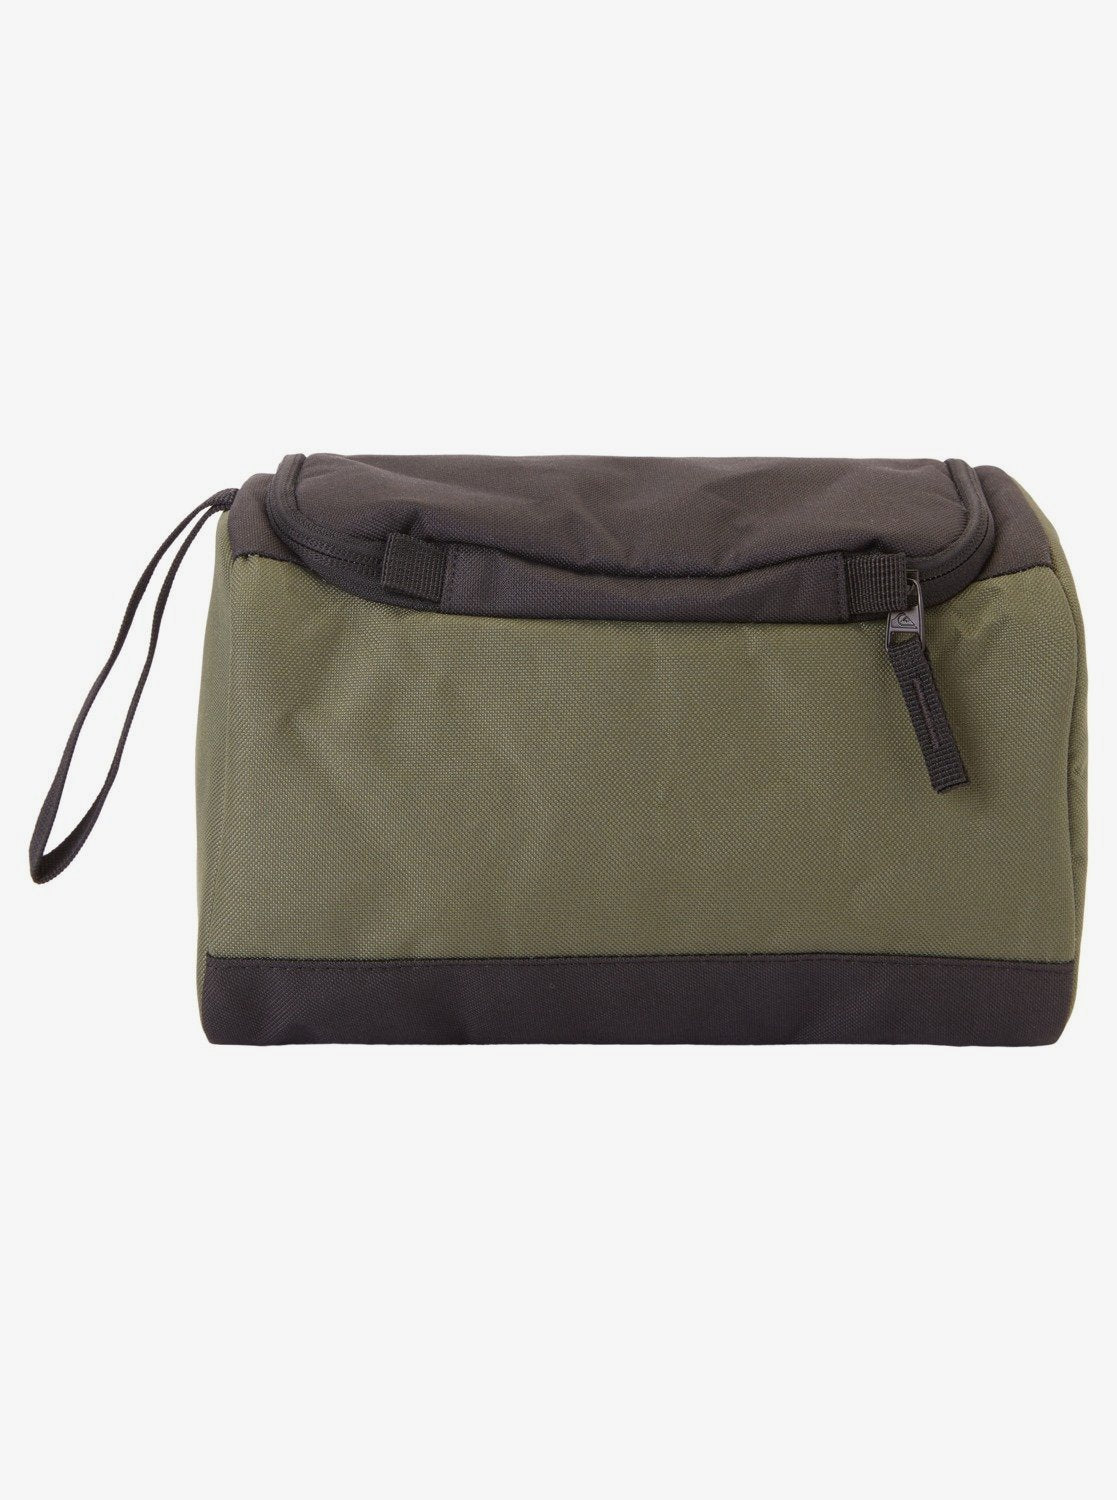 Capsule 6L - Wash Bag for Men